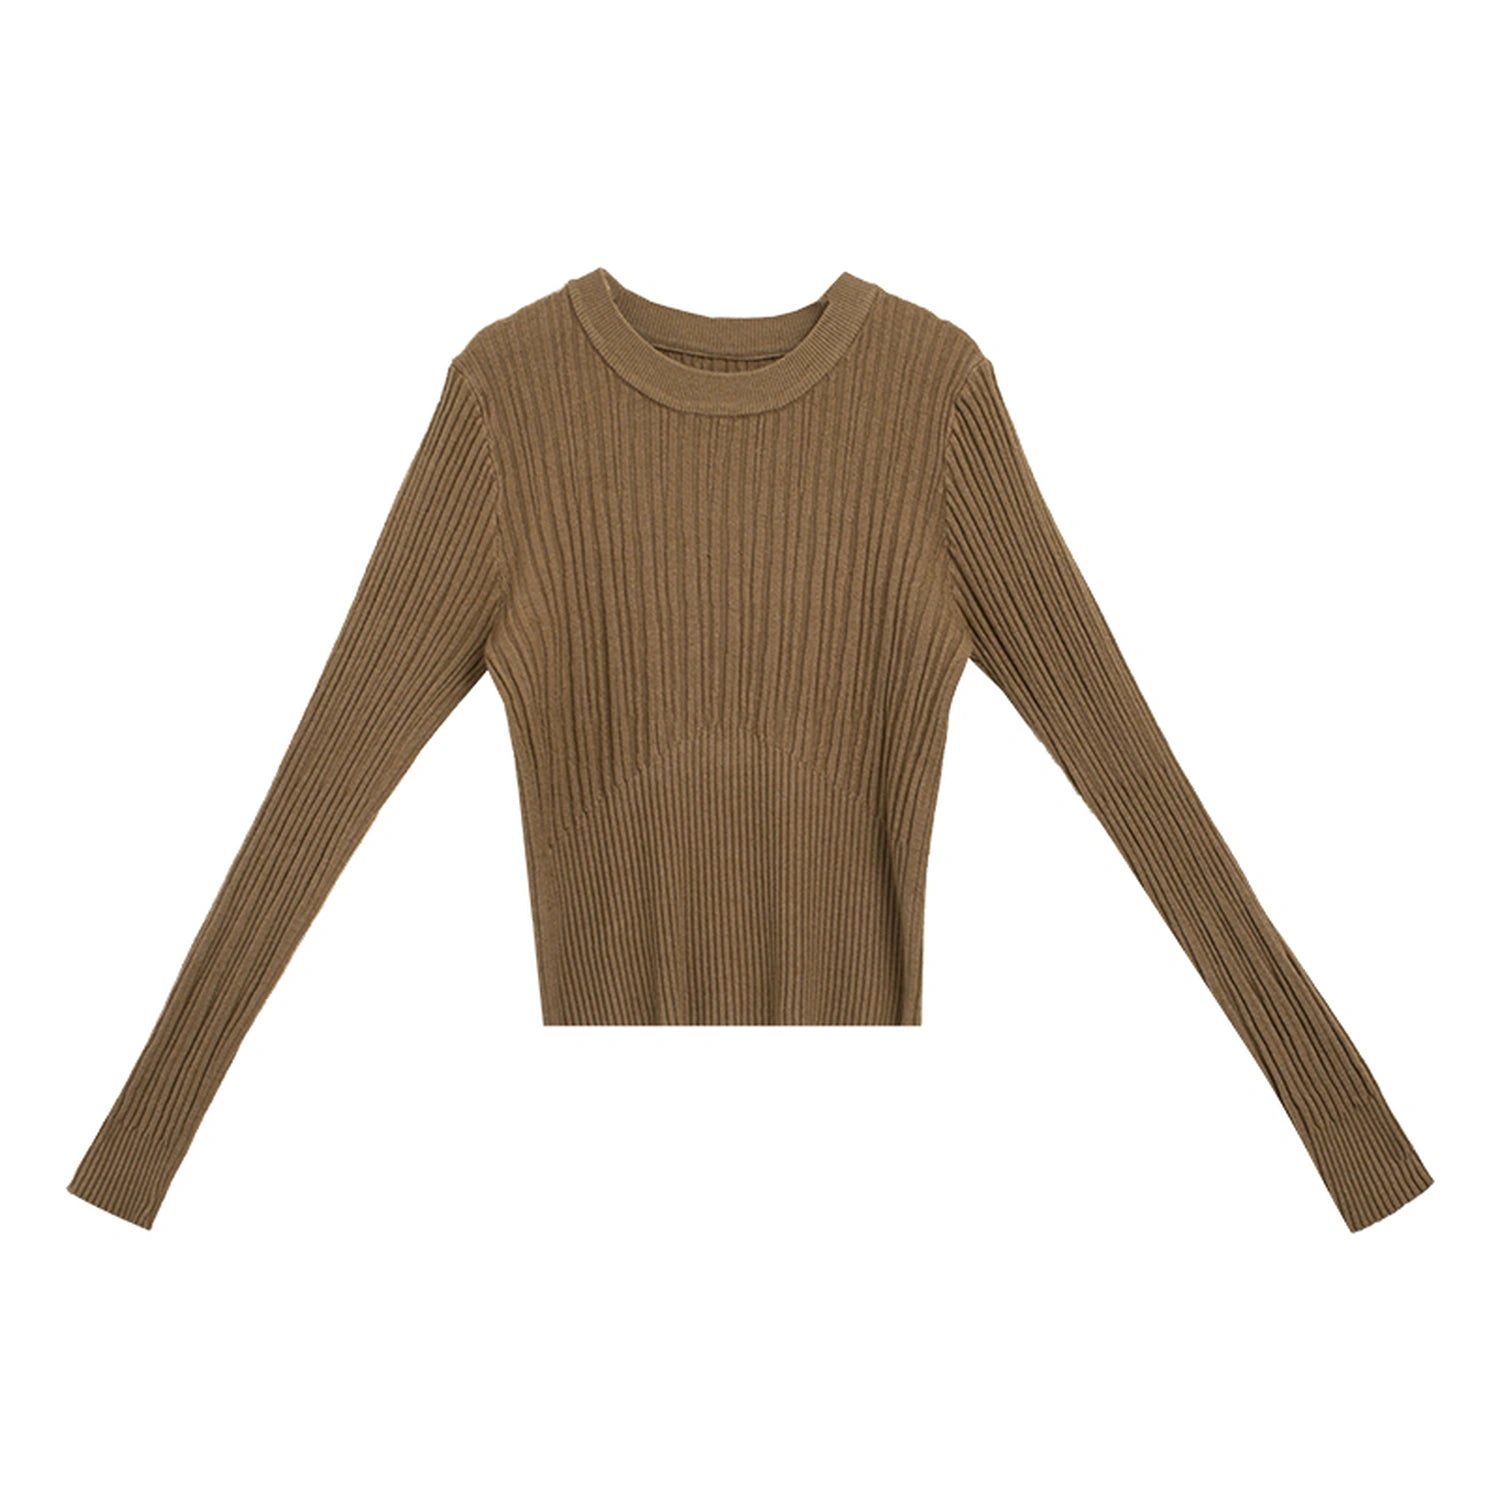 Sweater Knit Berusuk Potong dengan Lengan Panjang